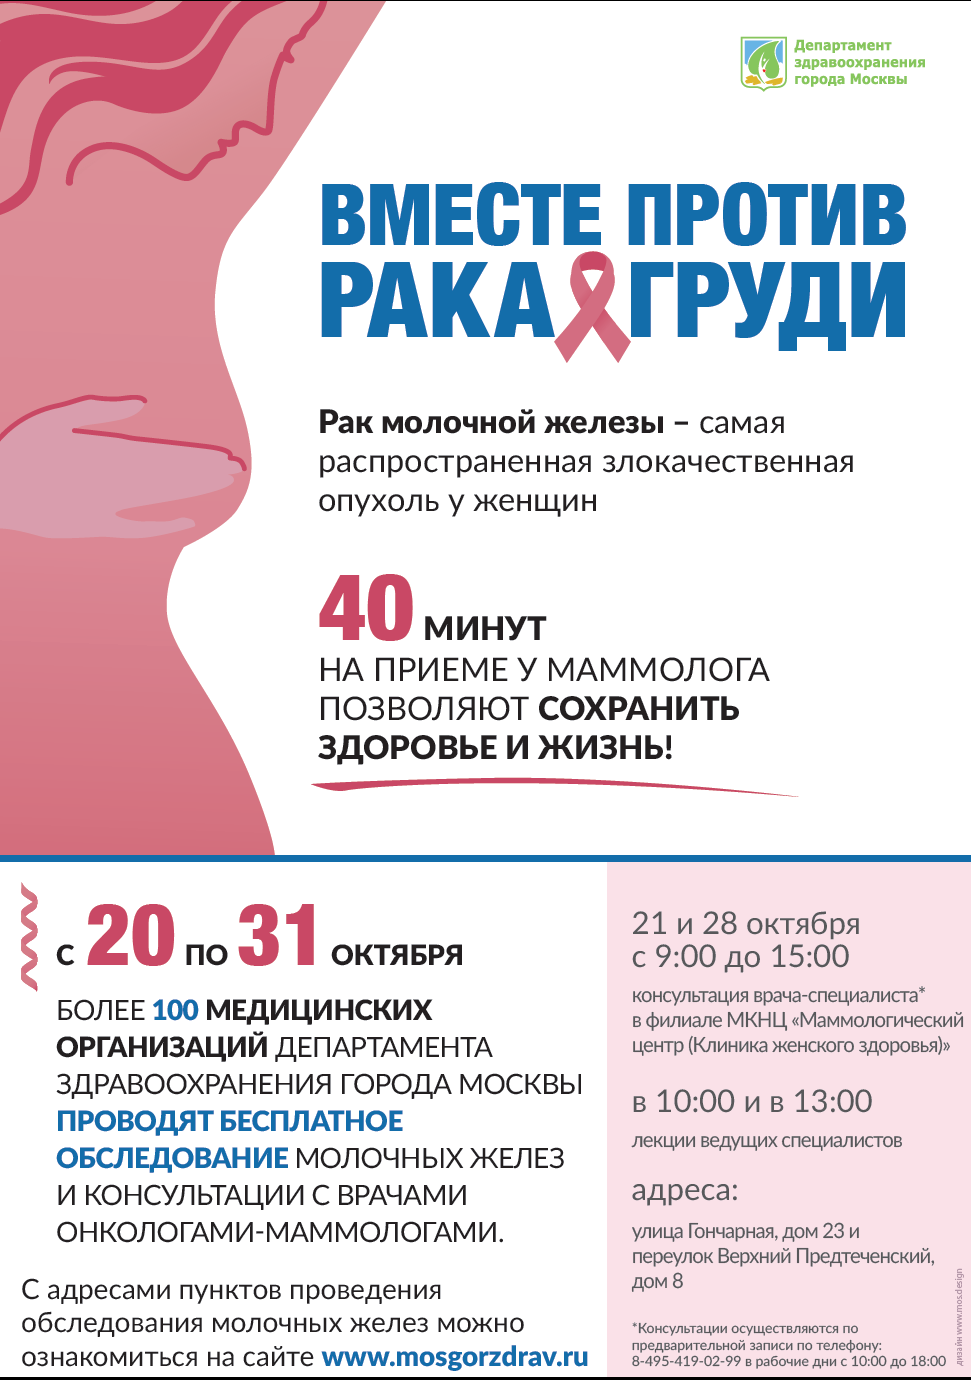 Акция Департамента здравоохранения города Москвы 